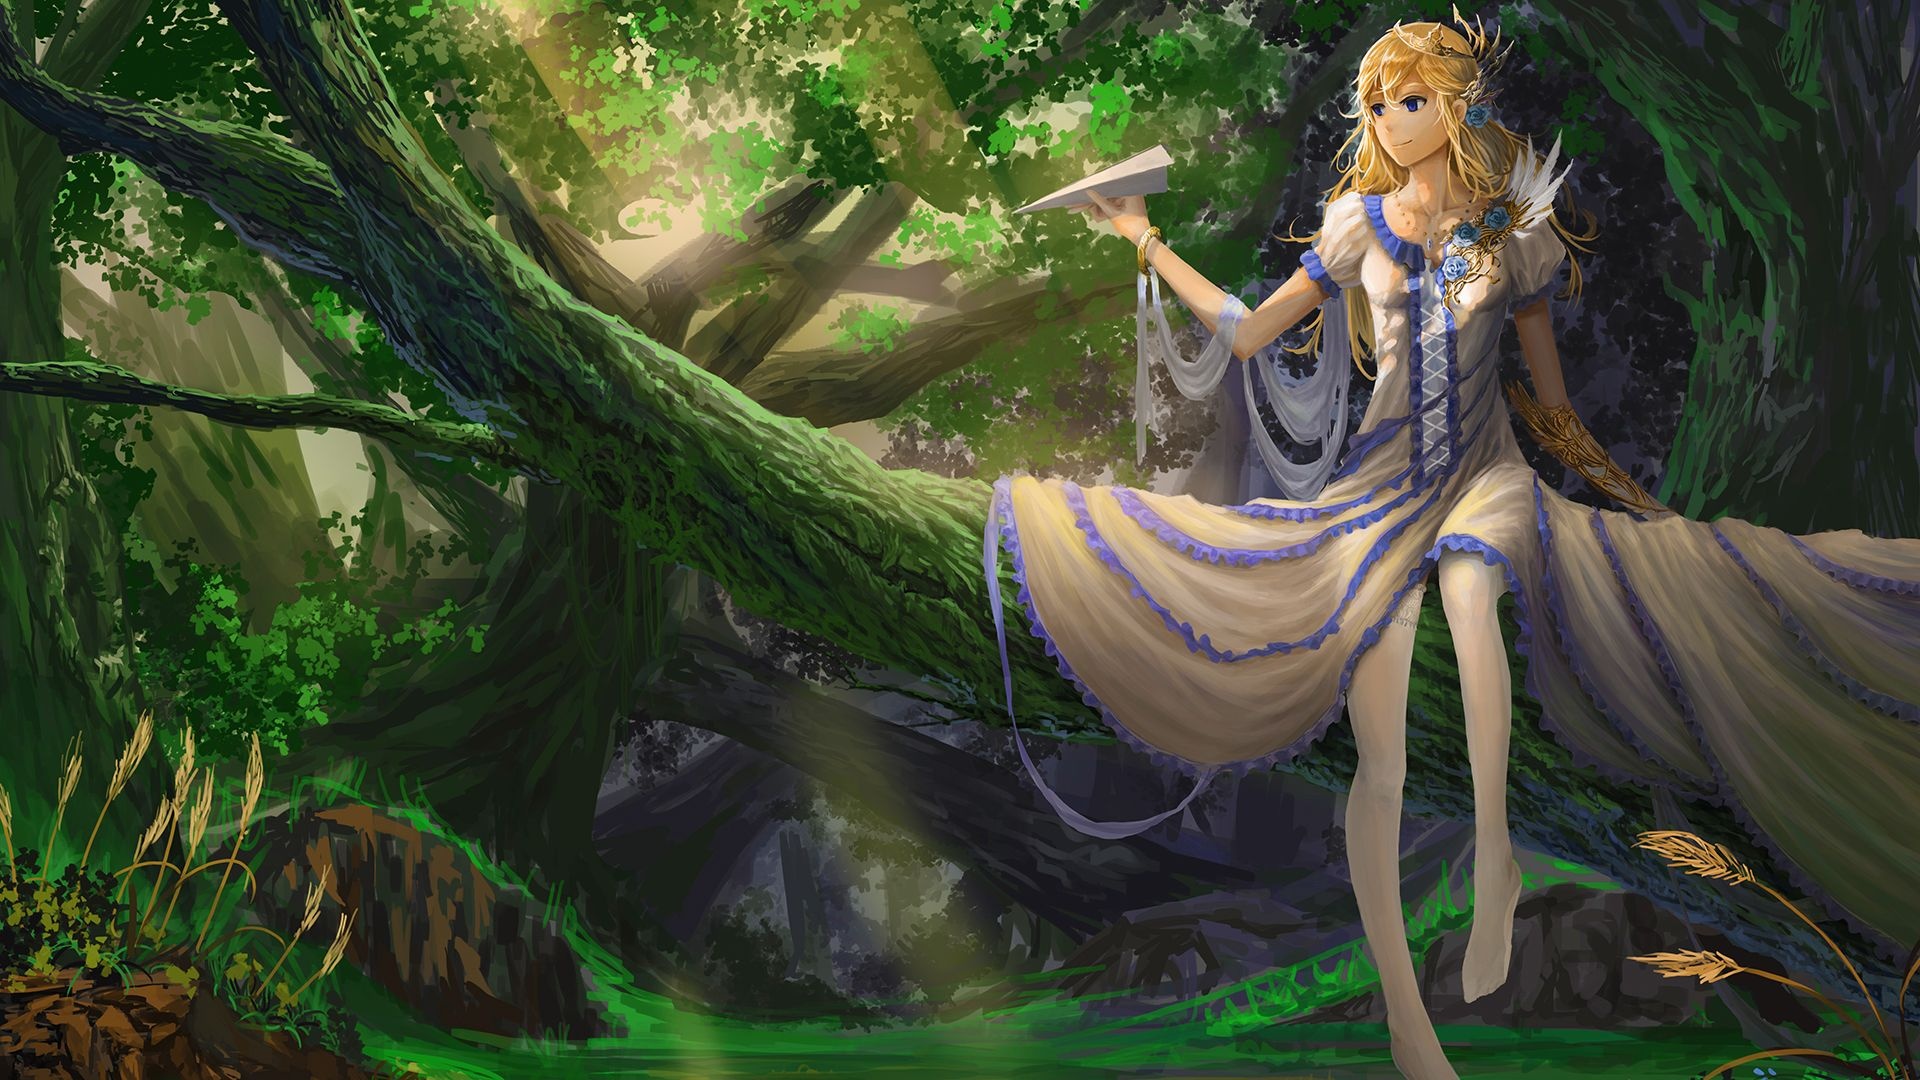 Anime Girl: Aesthetic, Artwork, Fantasy, Illustration. 1920x1080 Full HD Background.